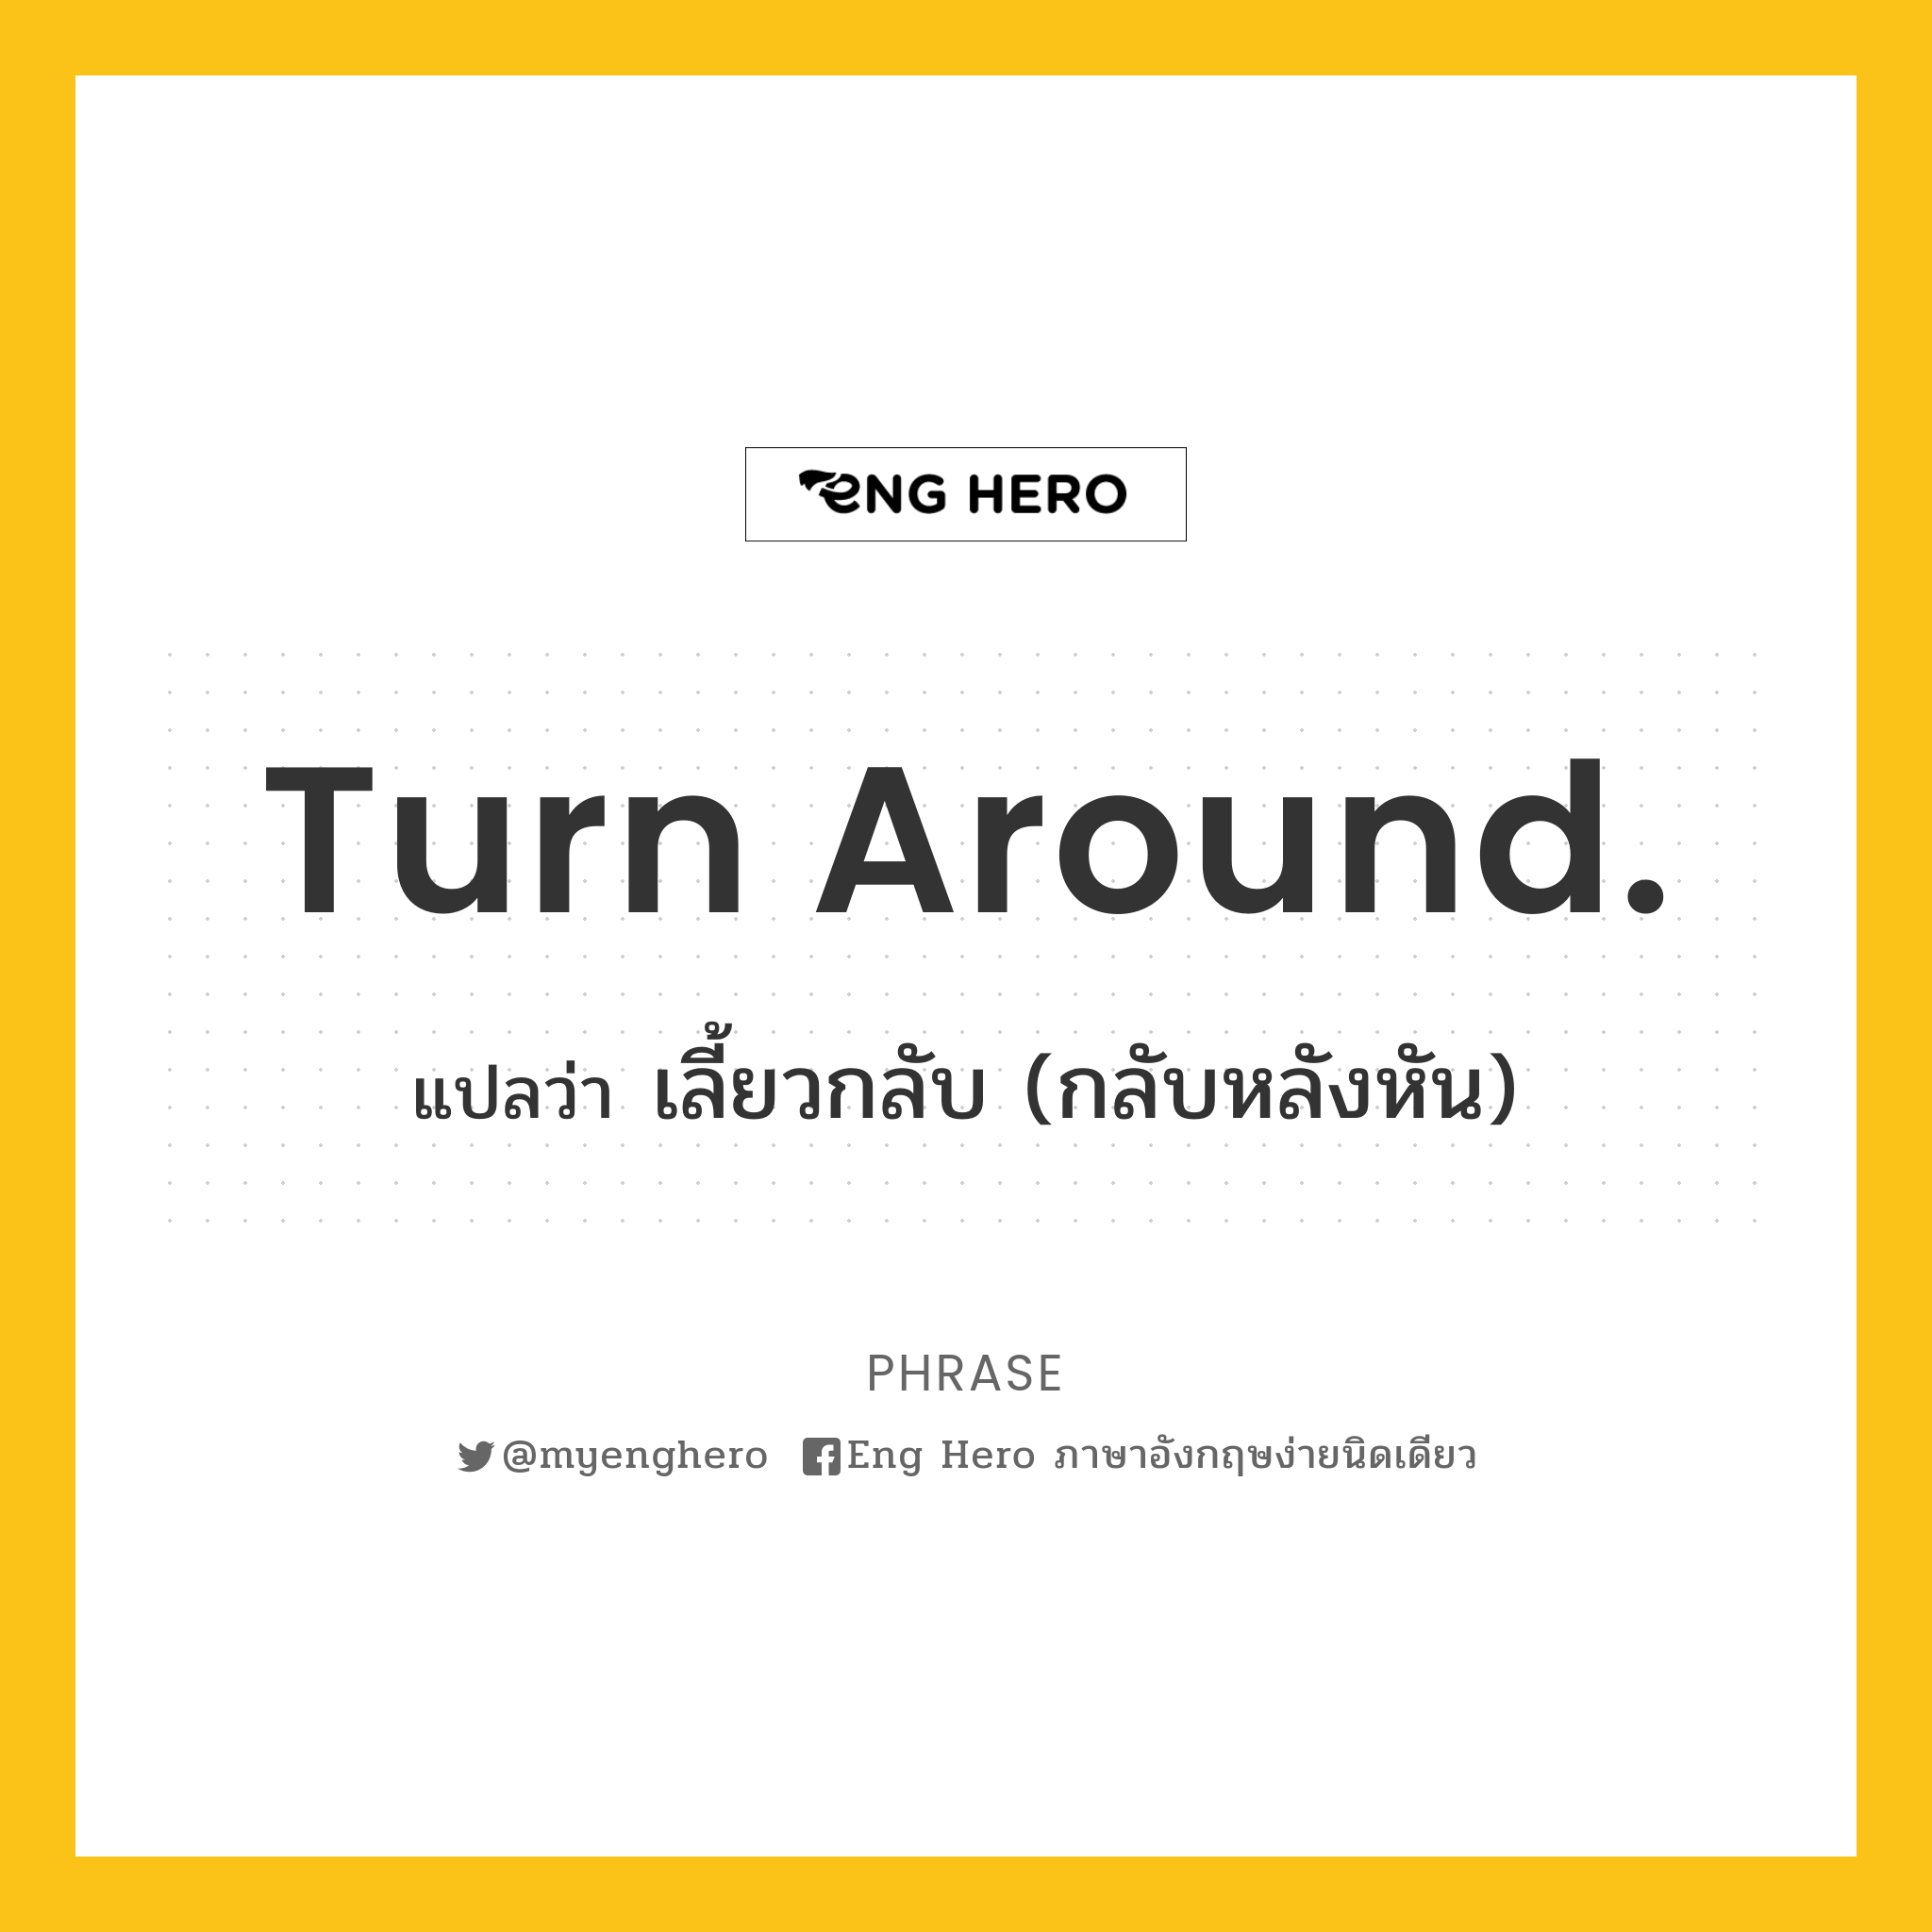 Turn around.